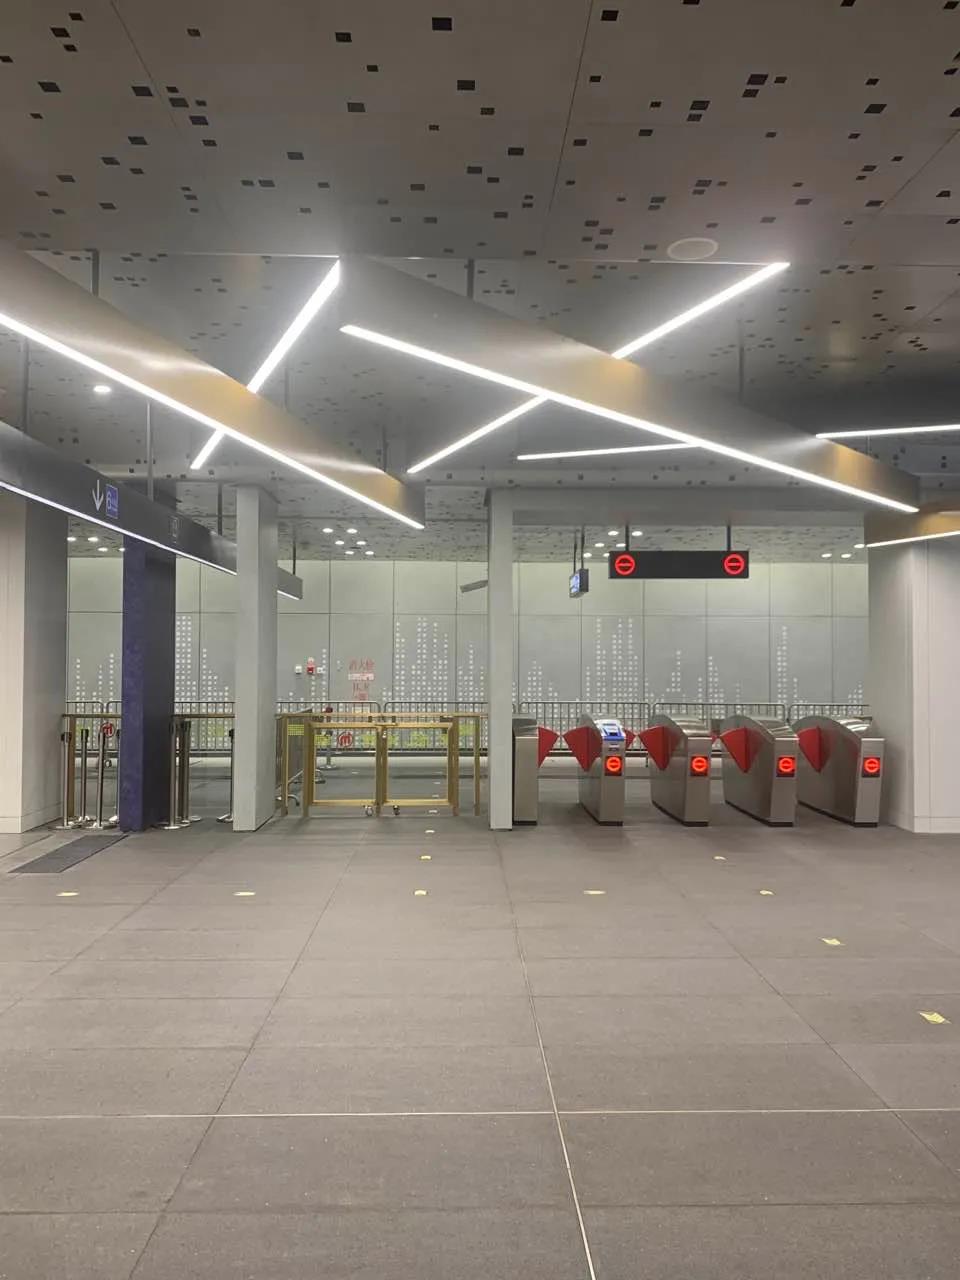 三思45000套LED灯具在杭富城际铁路演绎空间照明艺术